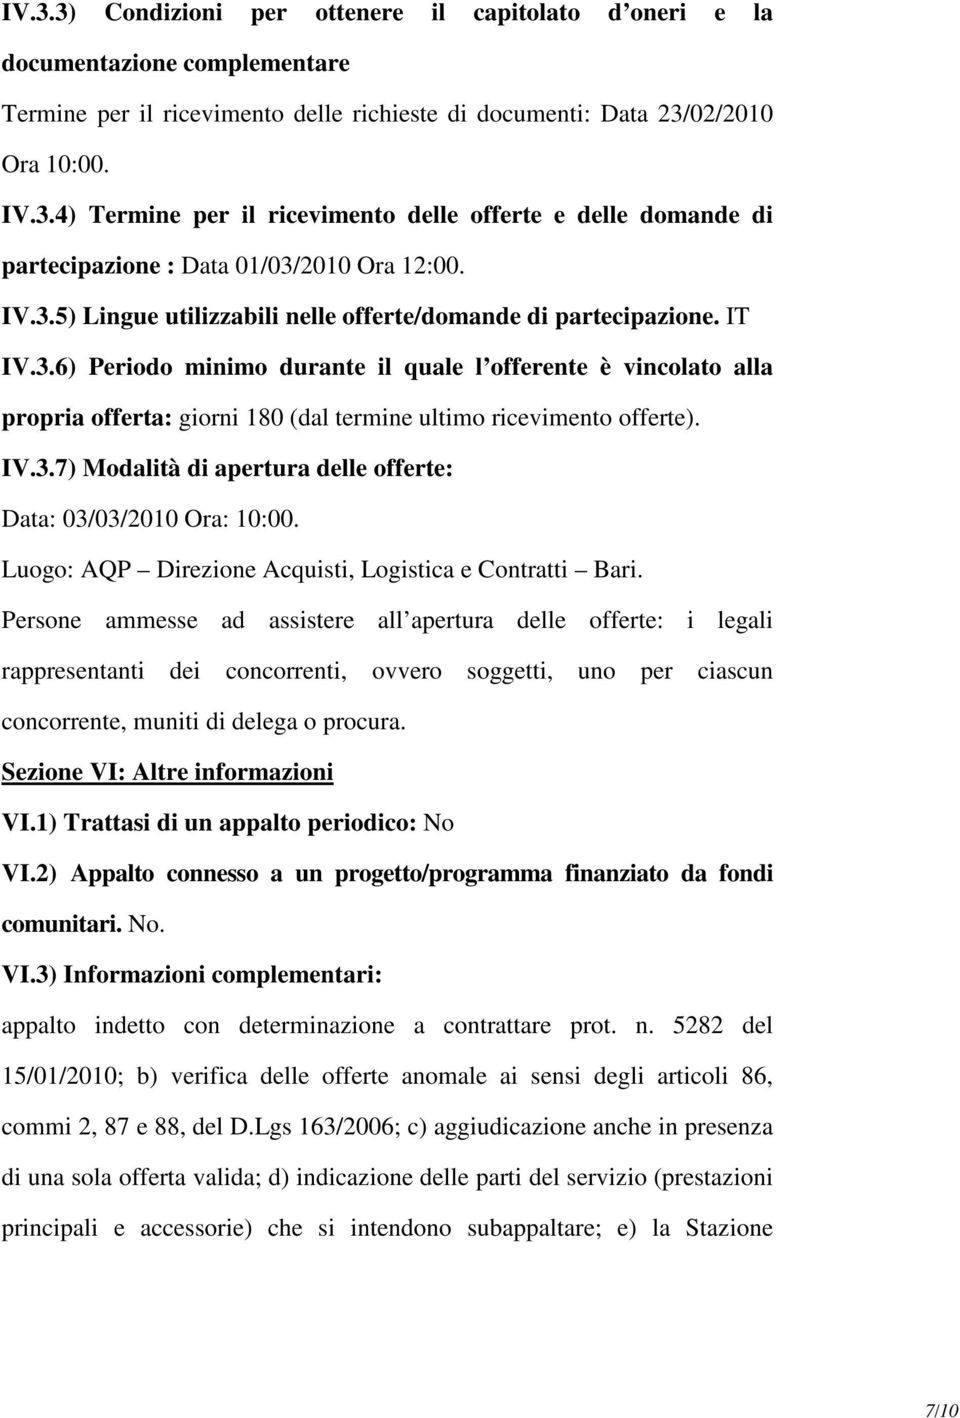 IV.3.7) Modalità di apertura delle offerte: Data: 03/03/2010 Ora: 10:00. Luogo: AQP Direzione Acquisti, Logistica e Contratti Bari.